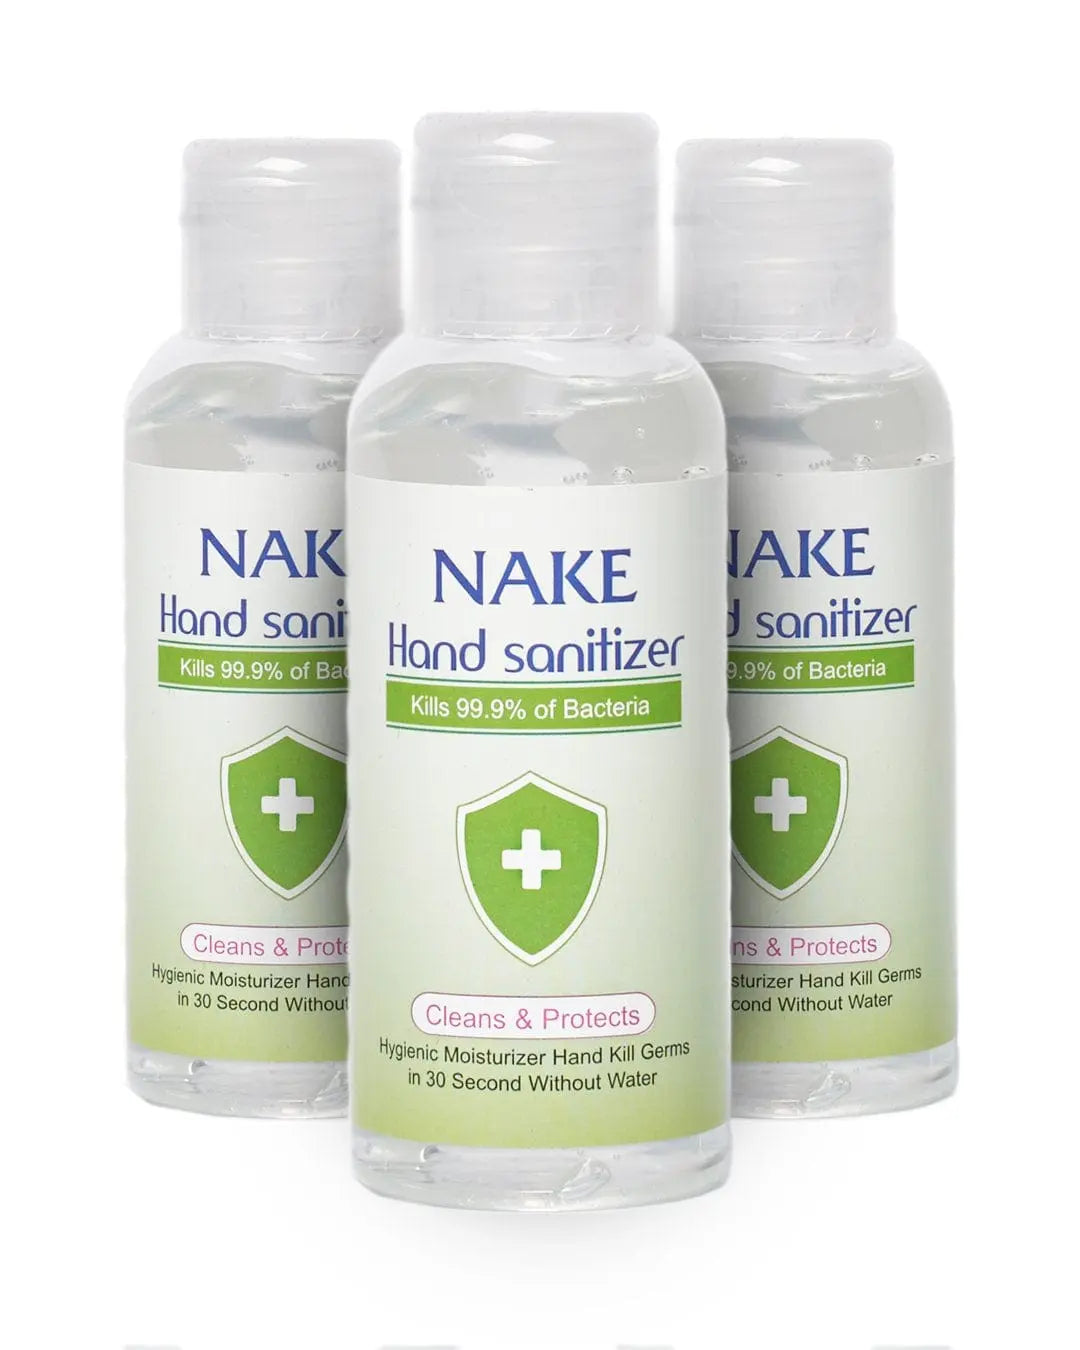 Nake Hand Sanitiser (70% Alc.) Multipack, 3 x 100 ml Hand Sanitizers